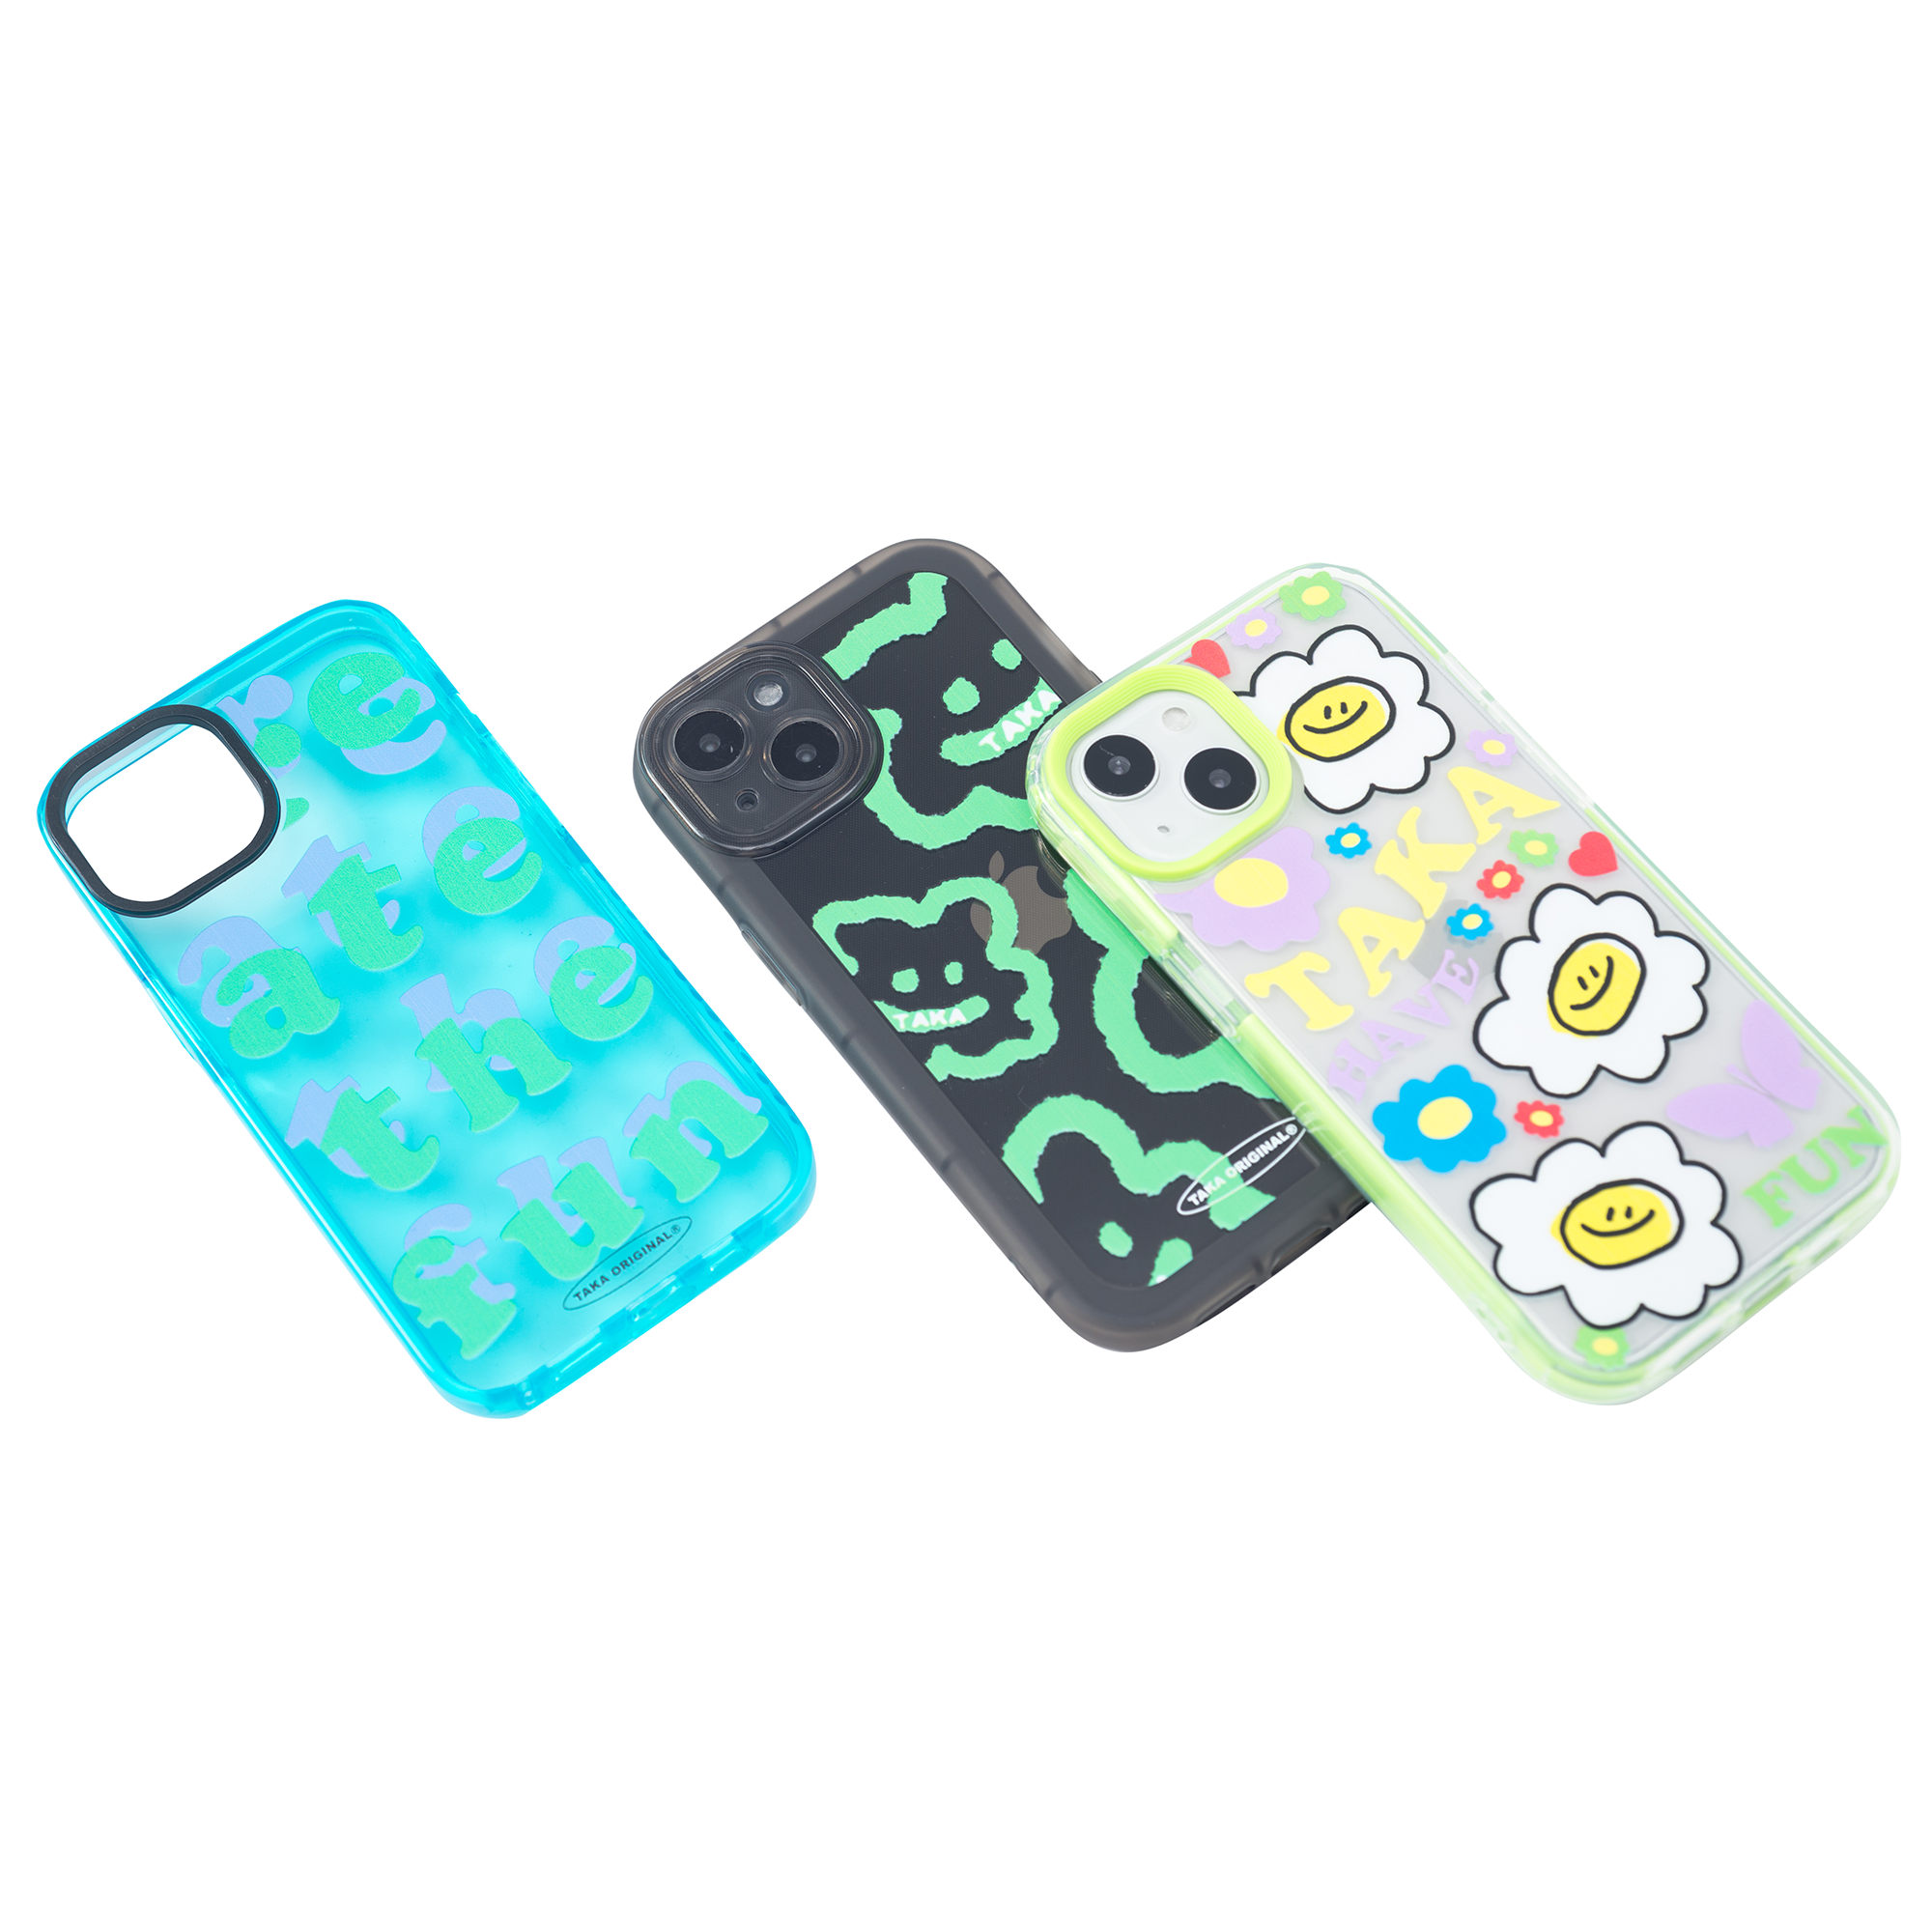 TAKA Original create the fun iphone 13 case